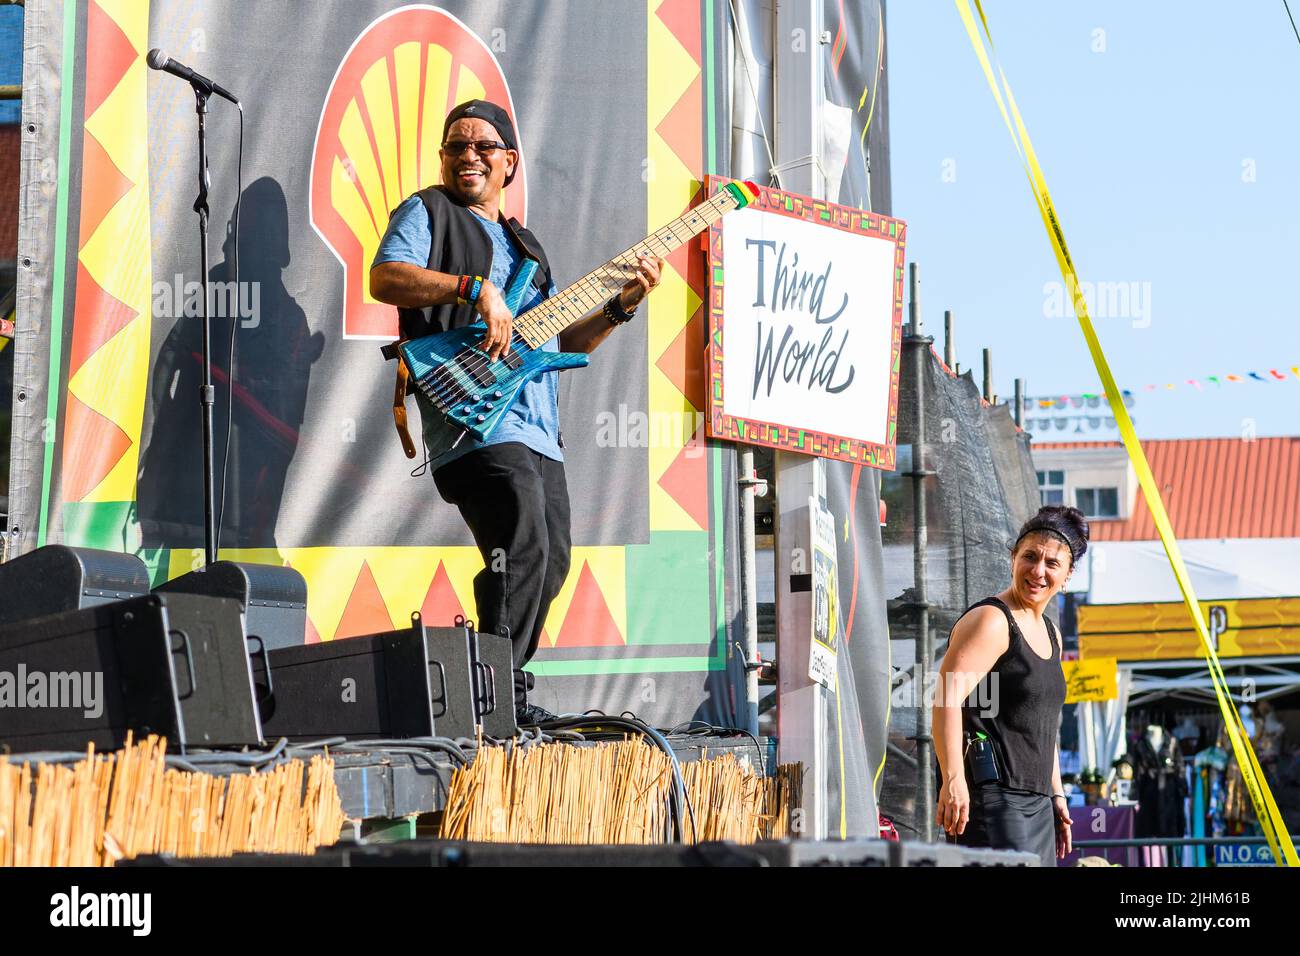 NEW ORLEANS, LA, USA - 29. April 2022: Richard Daley spielt Bass vor dem Schild der Dritten Welt, wobei eine Frau dabeisteht, um die Gebärdensprache zu interpretieren Stockfoto